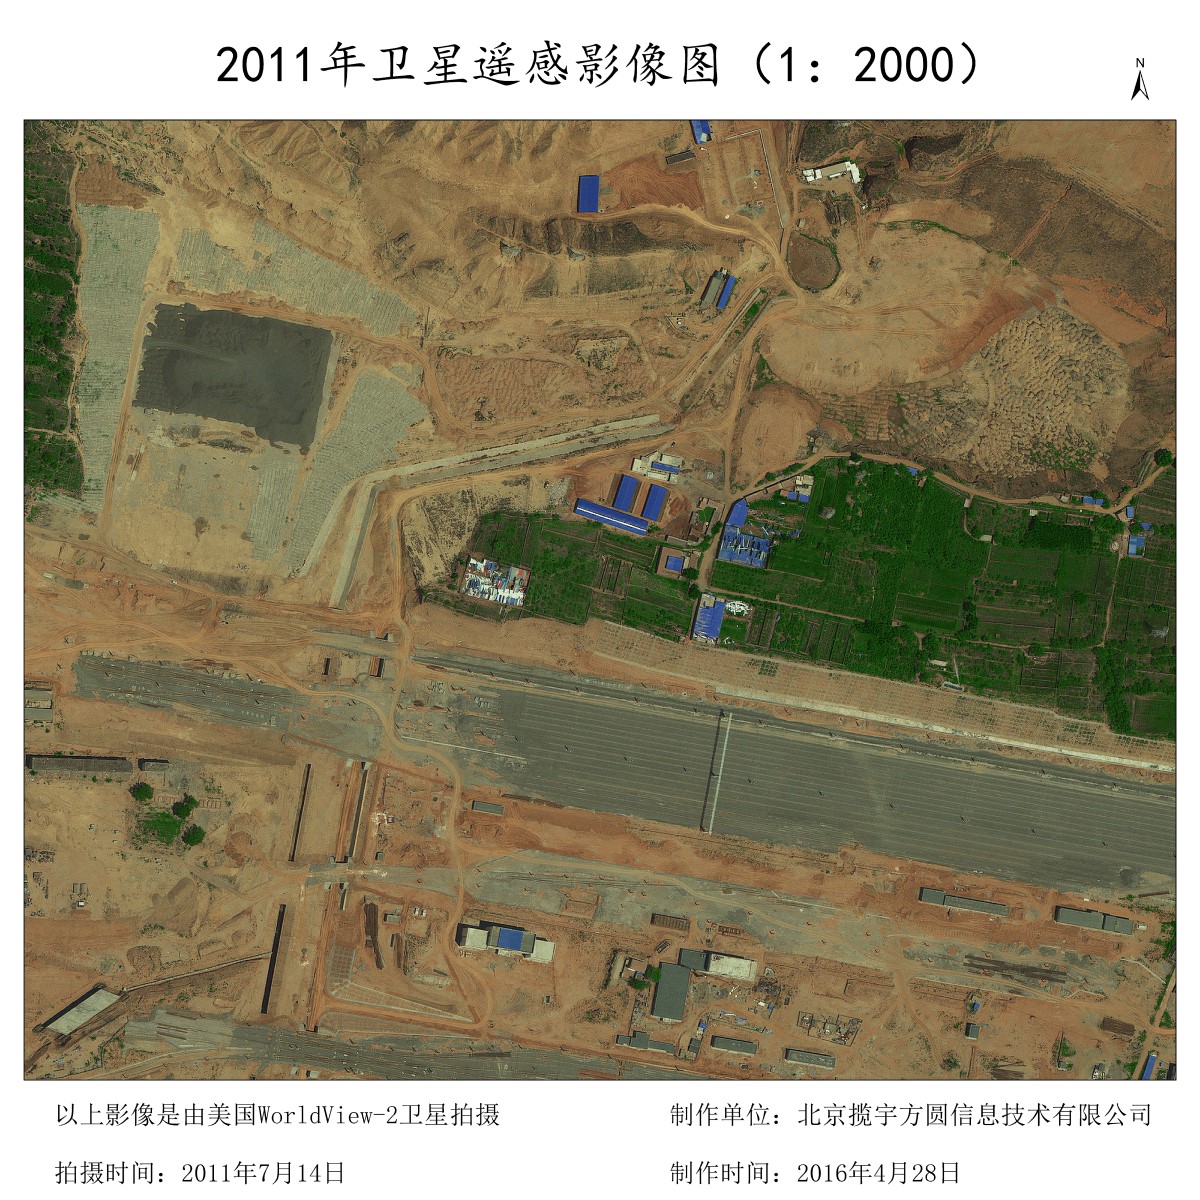 0.5米分辨率WORLDVIEW2卫星拍摄的工地影像样例